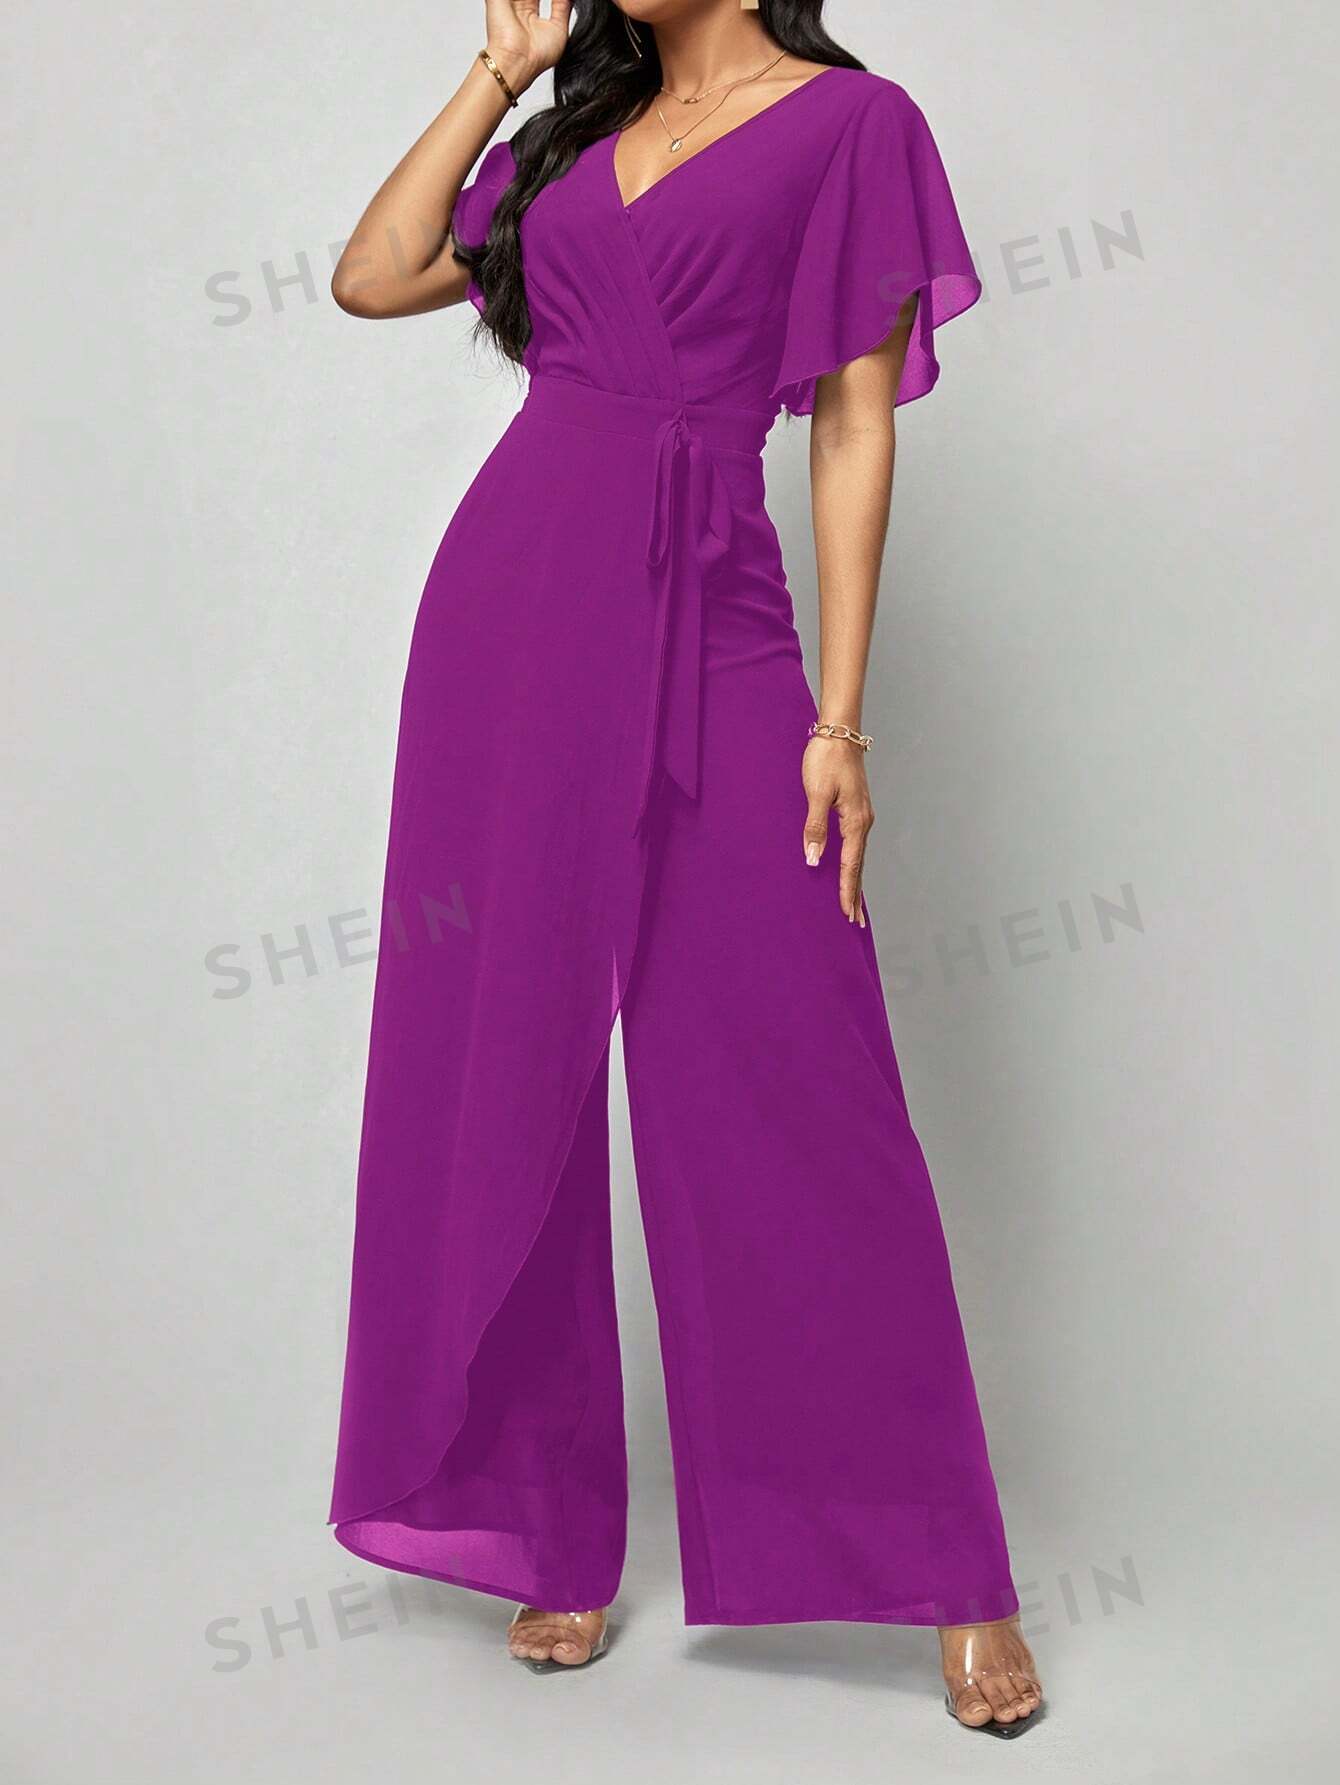 shein ezwear женский комбинезон с широкими штанинами и изогнутым вырезом черный SHEIN Clasi Женский однотонный плиссированный комбинезон с запахом и завязывающимся поясом, красный фиолетовый